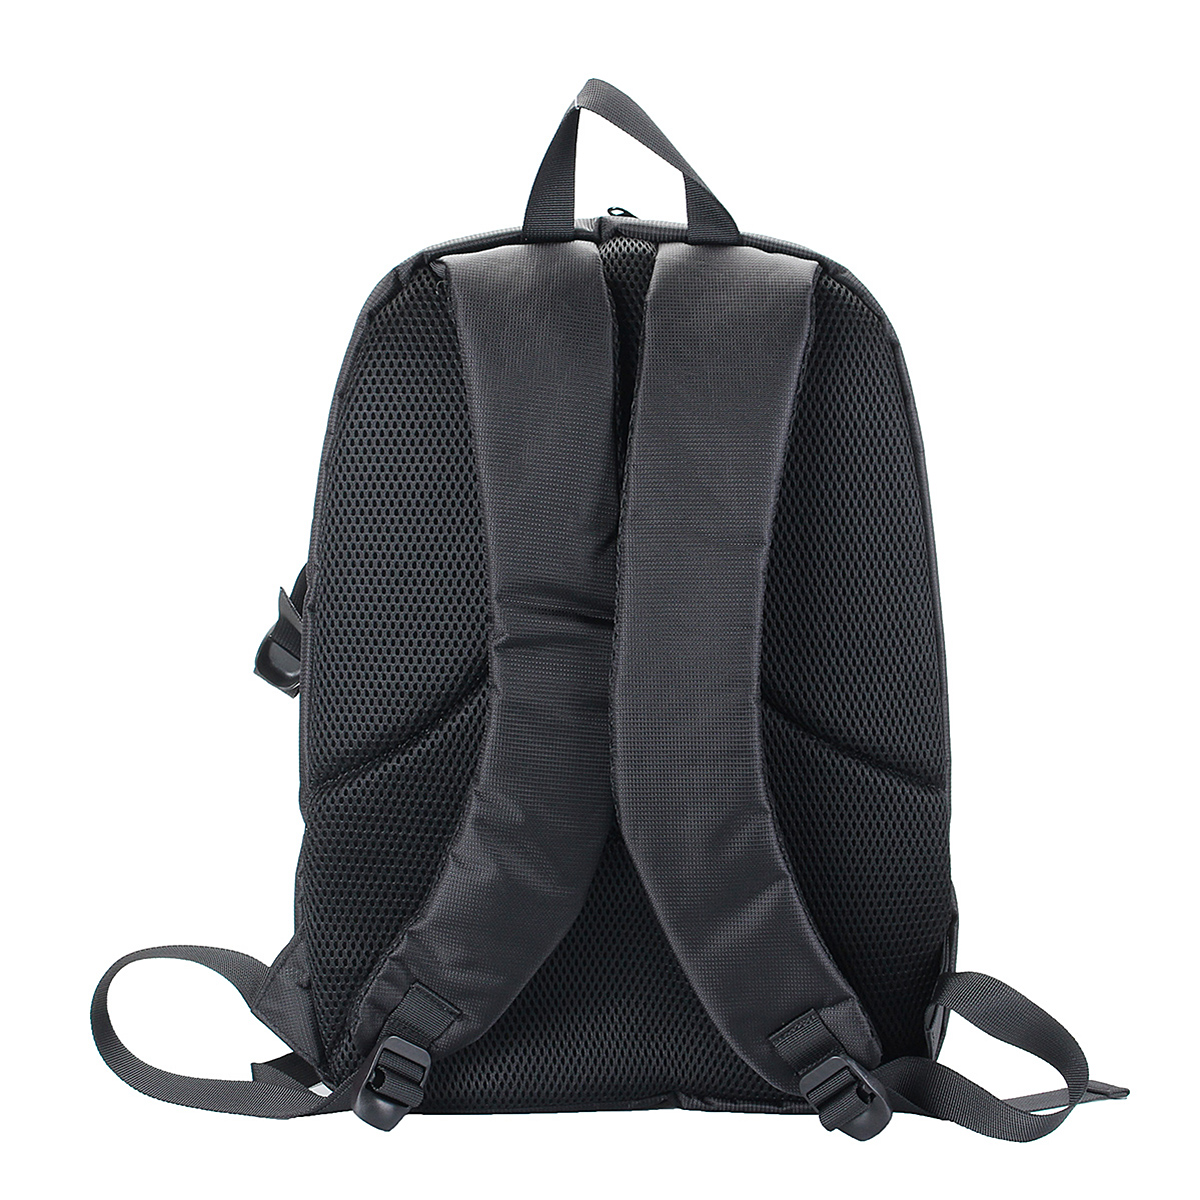 Waterproof-Backpack-Shoulder-Bag-Laptop-Case-For-DSLR-Camera-Lens-Accessories-1401643-3